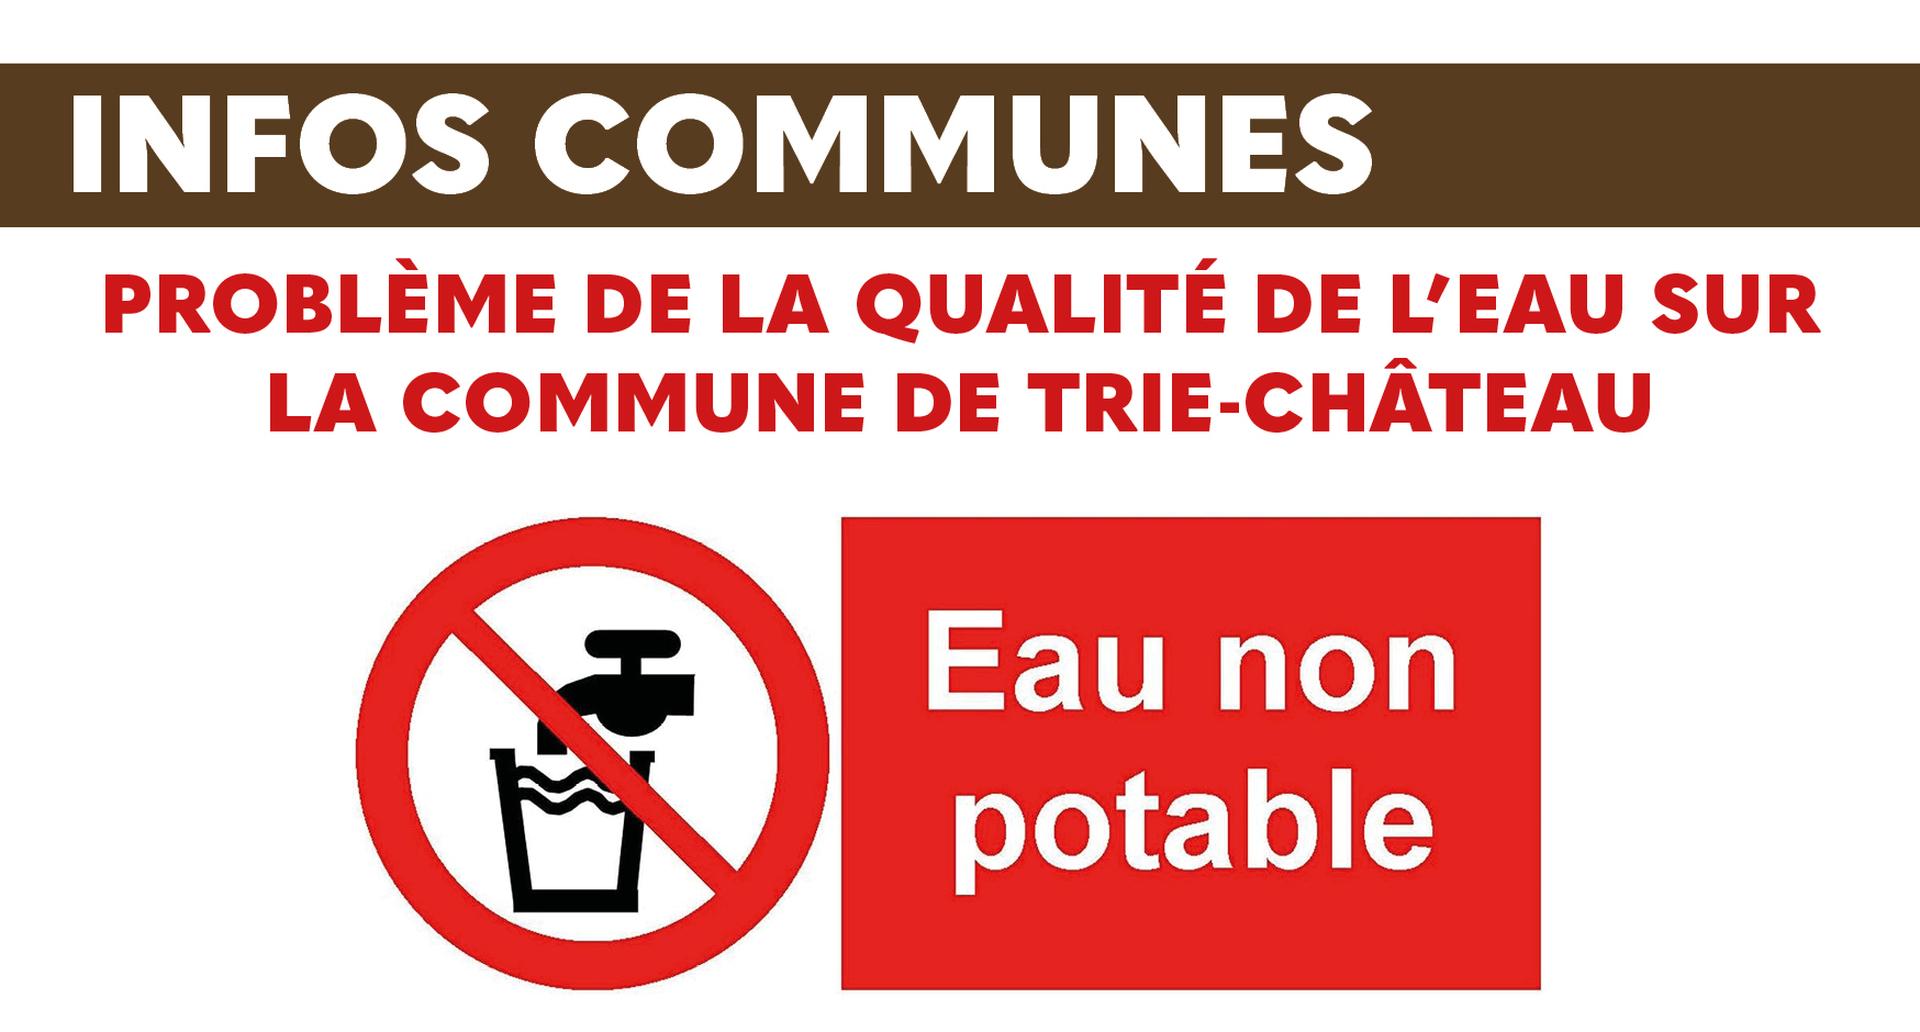 Problème de la qualité DE L’EAU sur la commune de Trie-Château